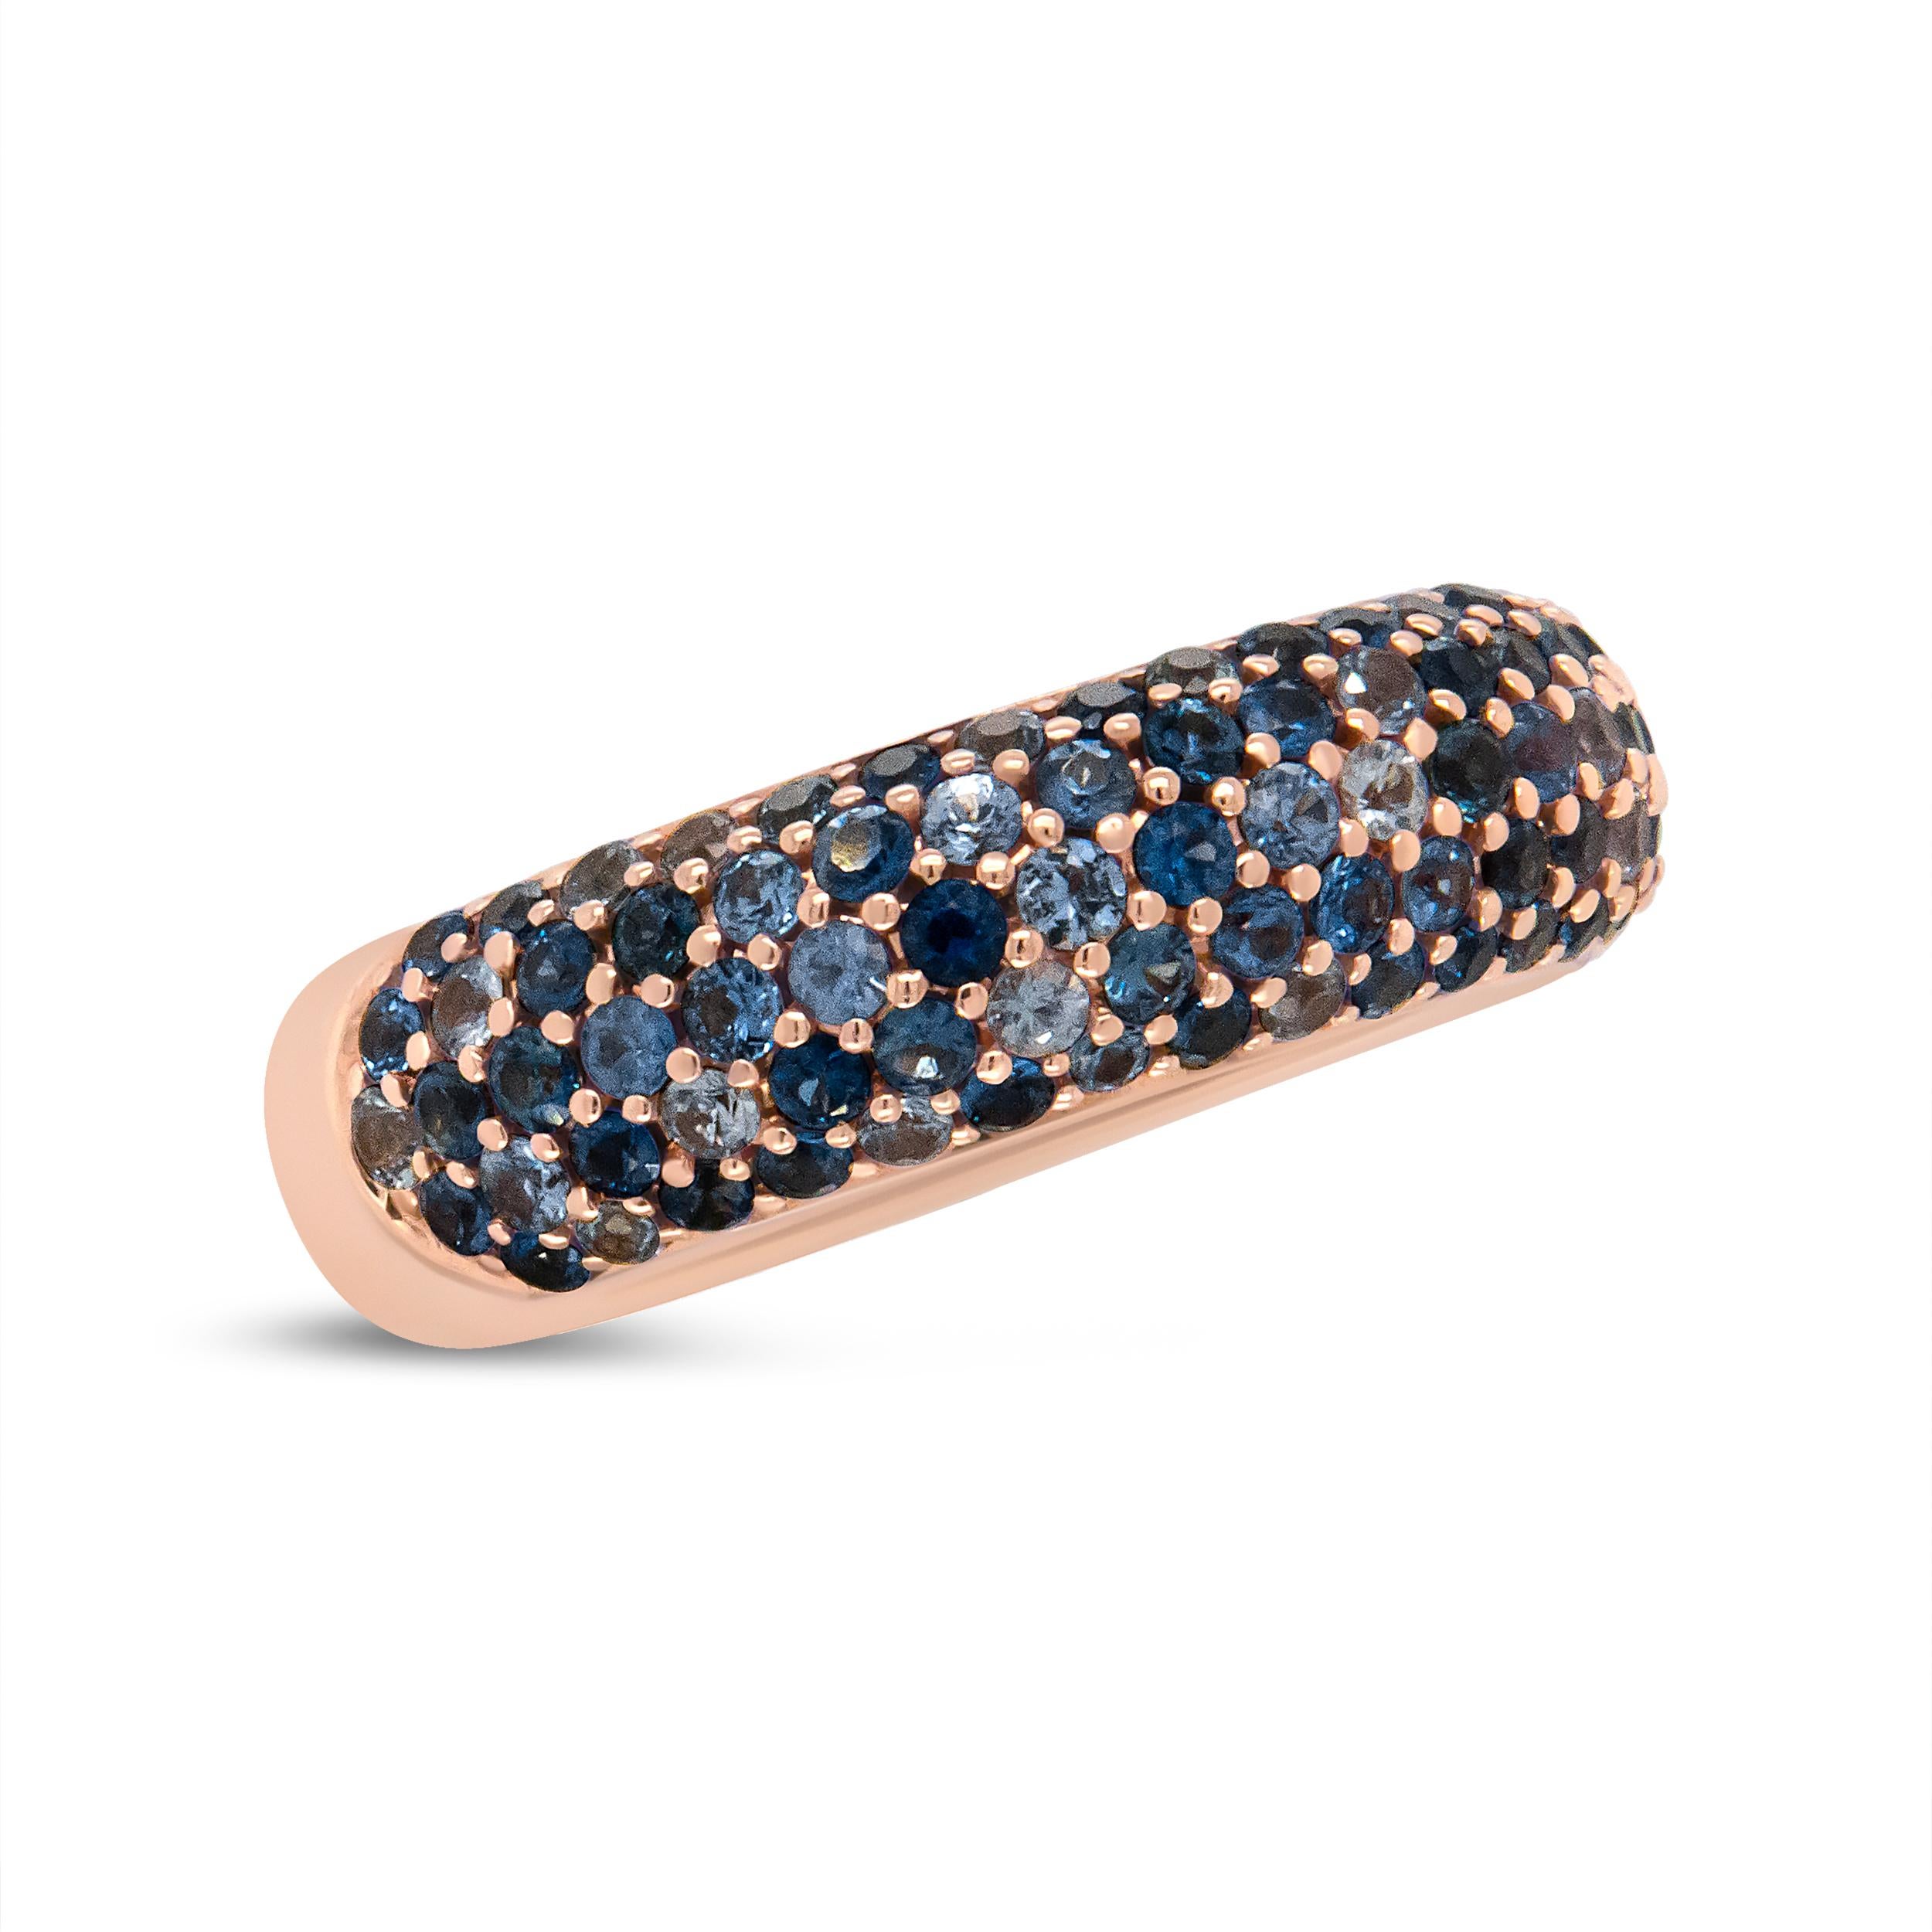 Dieses glamouröse Armband aus Roségold erinnert an den Ozean und ist mit atemberaubenden Saphiren verschiedener Kaliber und Blautöne verziert. Die schattierten blauen Edelsteine sind auf luxuriösem 18-karätigem Roségold verziert und sorgen für einen